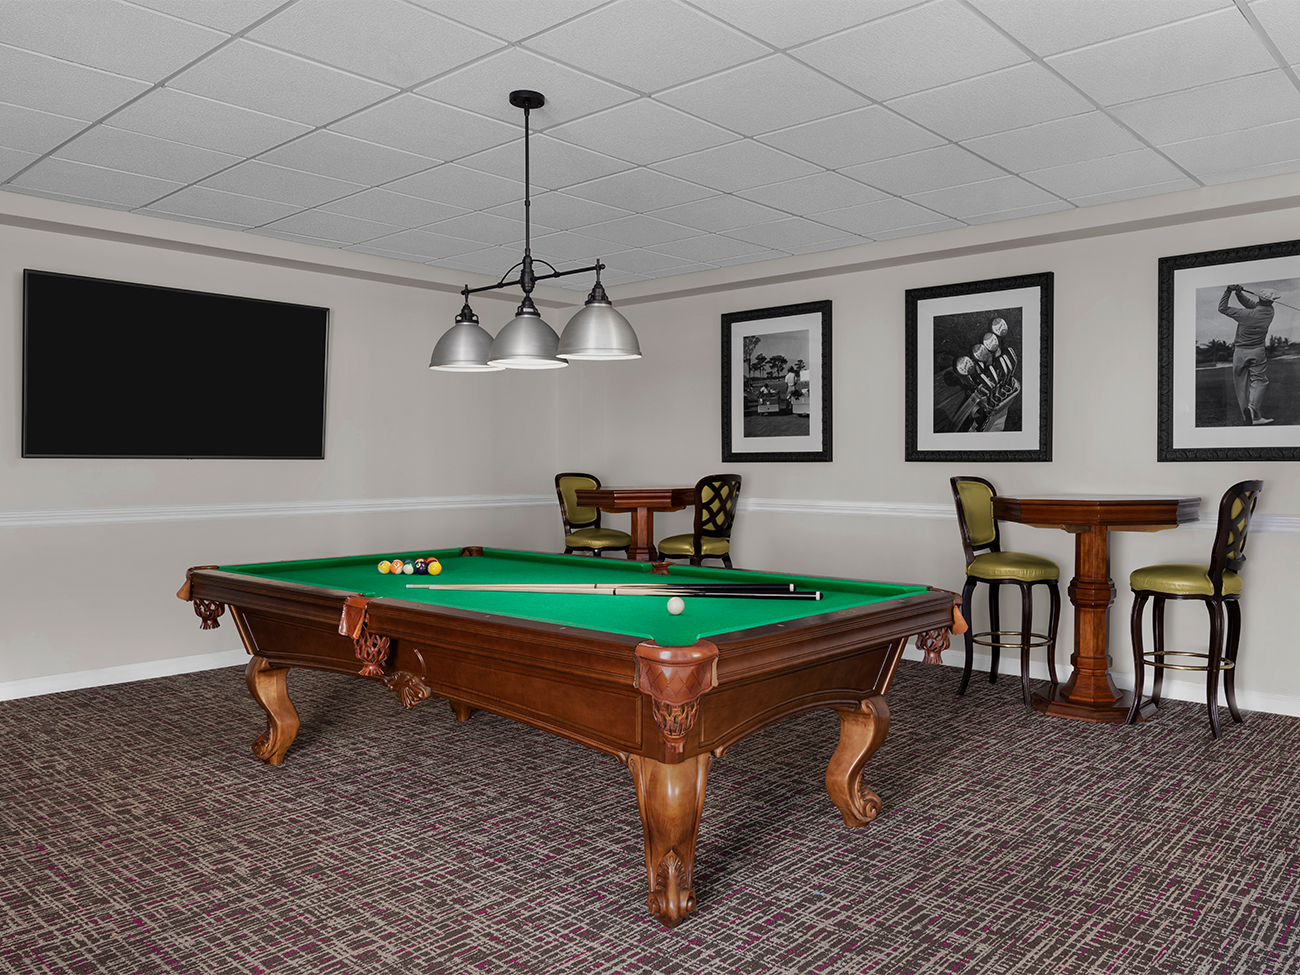 Lounge - Billiards